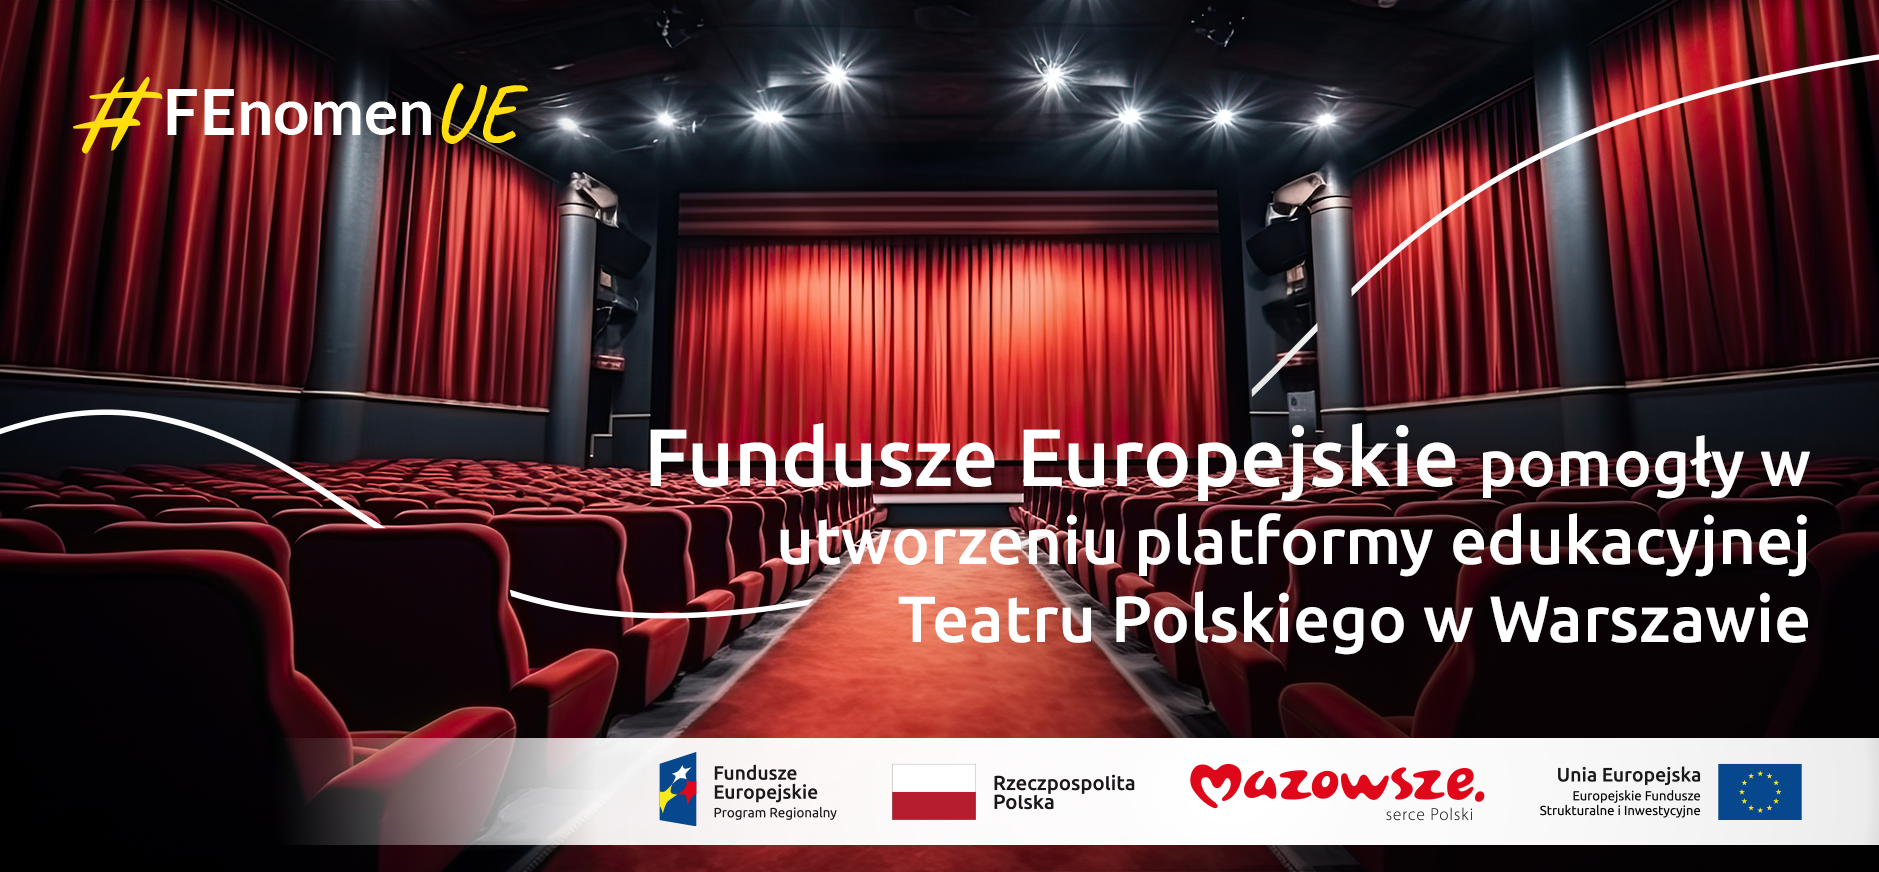 Hasło "Fundusze Europejskie pomogły w utworzeniu platformy edukacyjnej Teatru Polskiego w Warszawie #FEnomenUE", a w tle scena teatralna